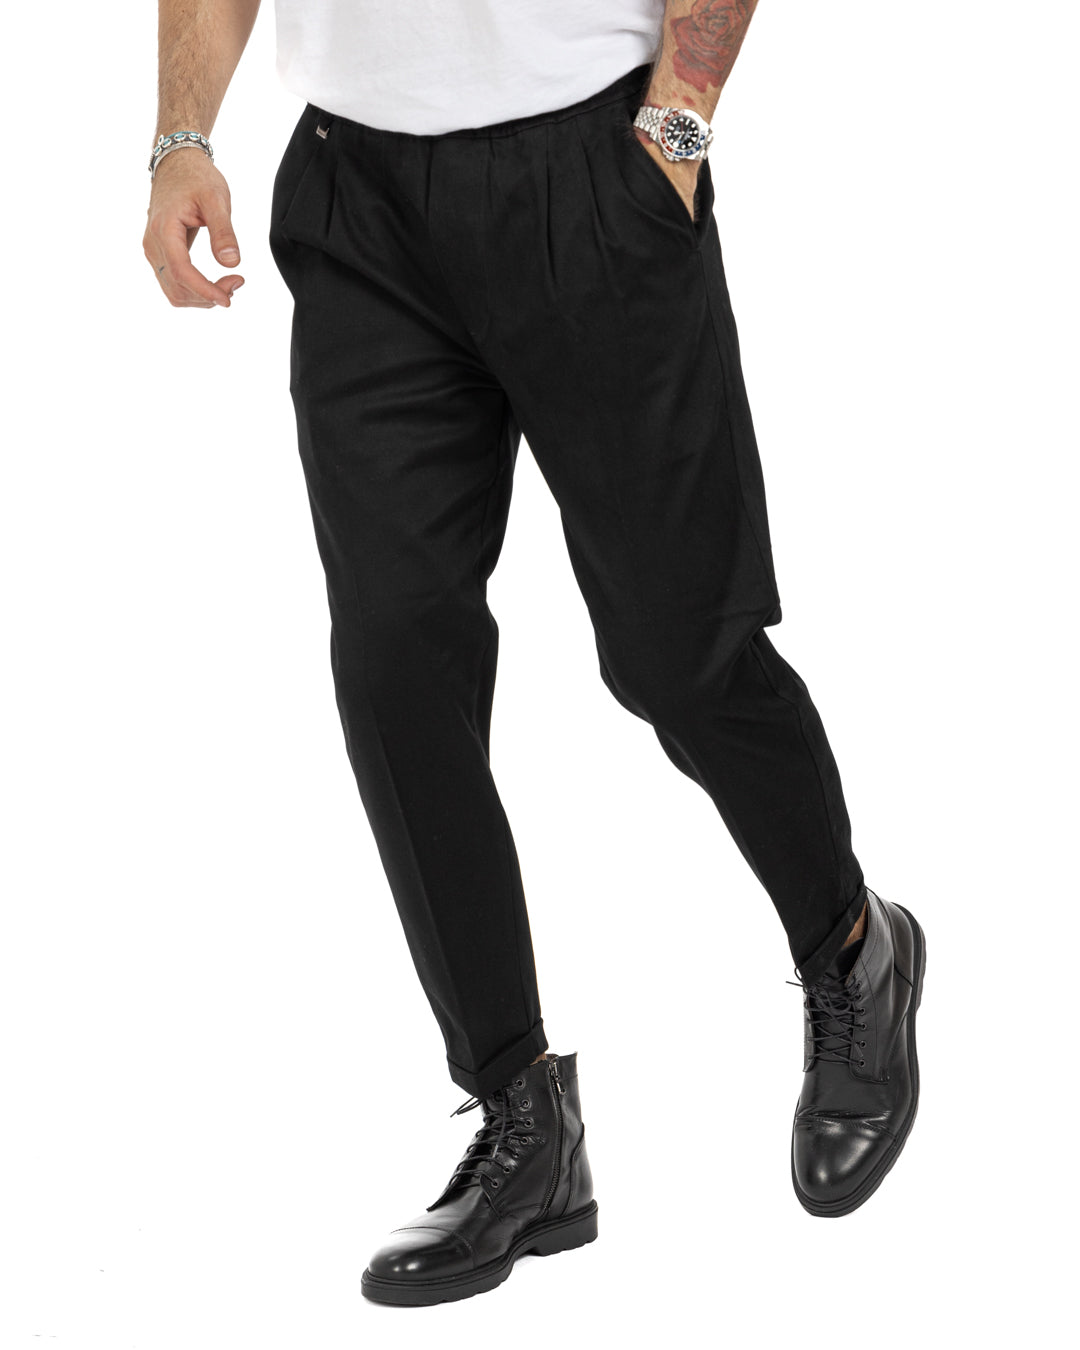 Larry - black cotton trousers